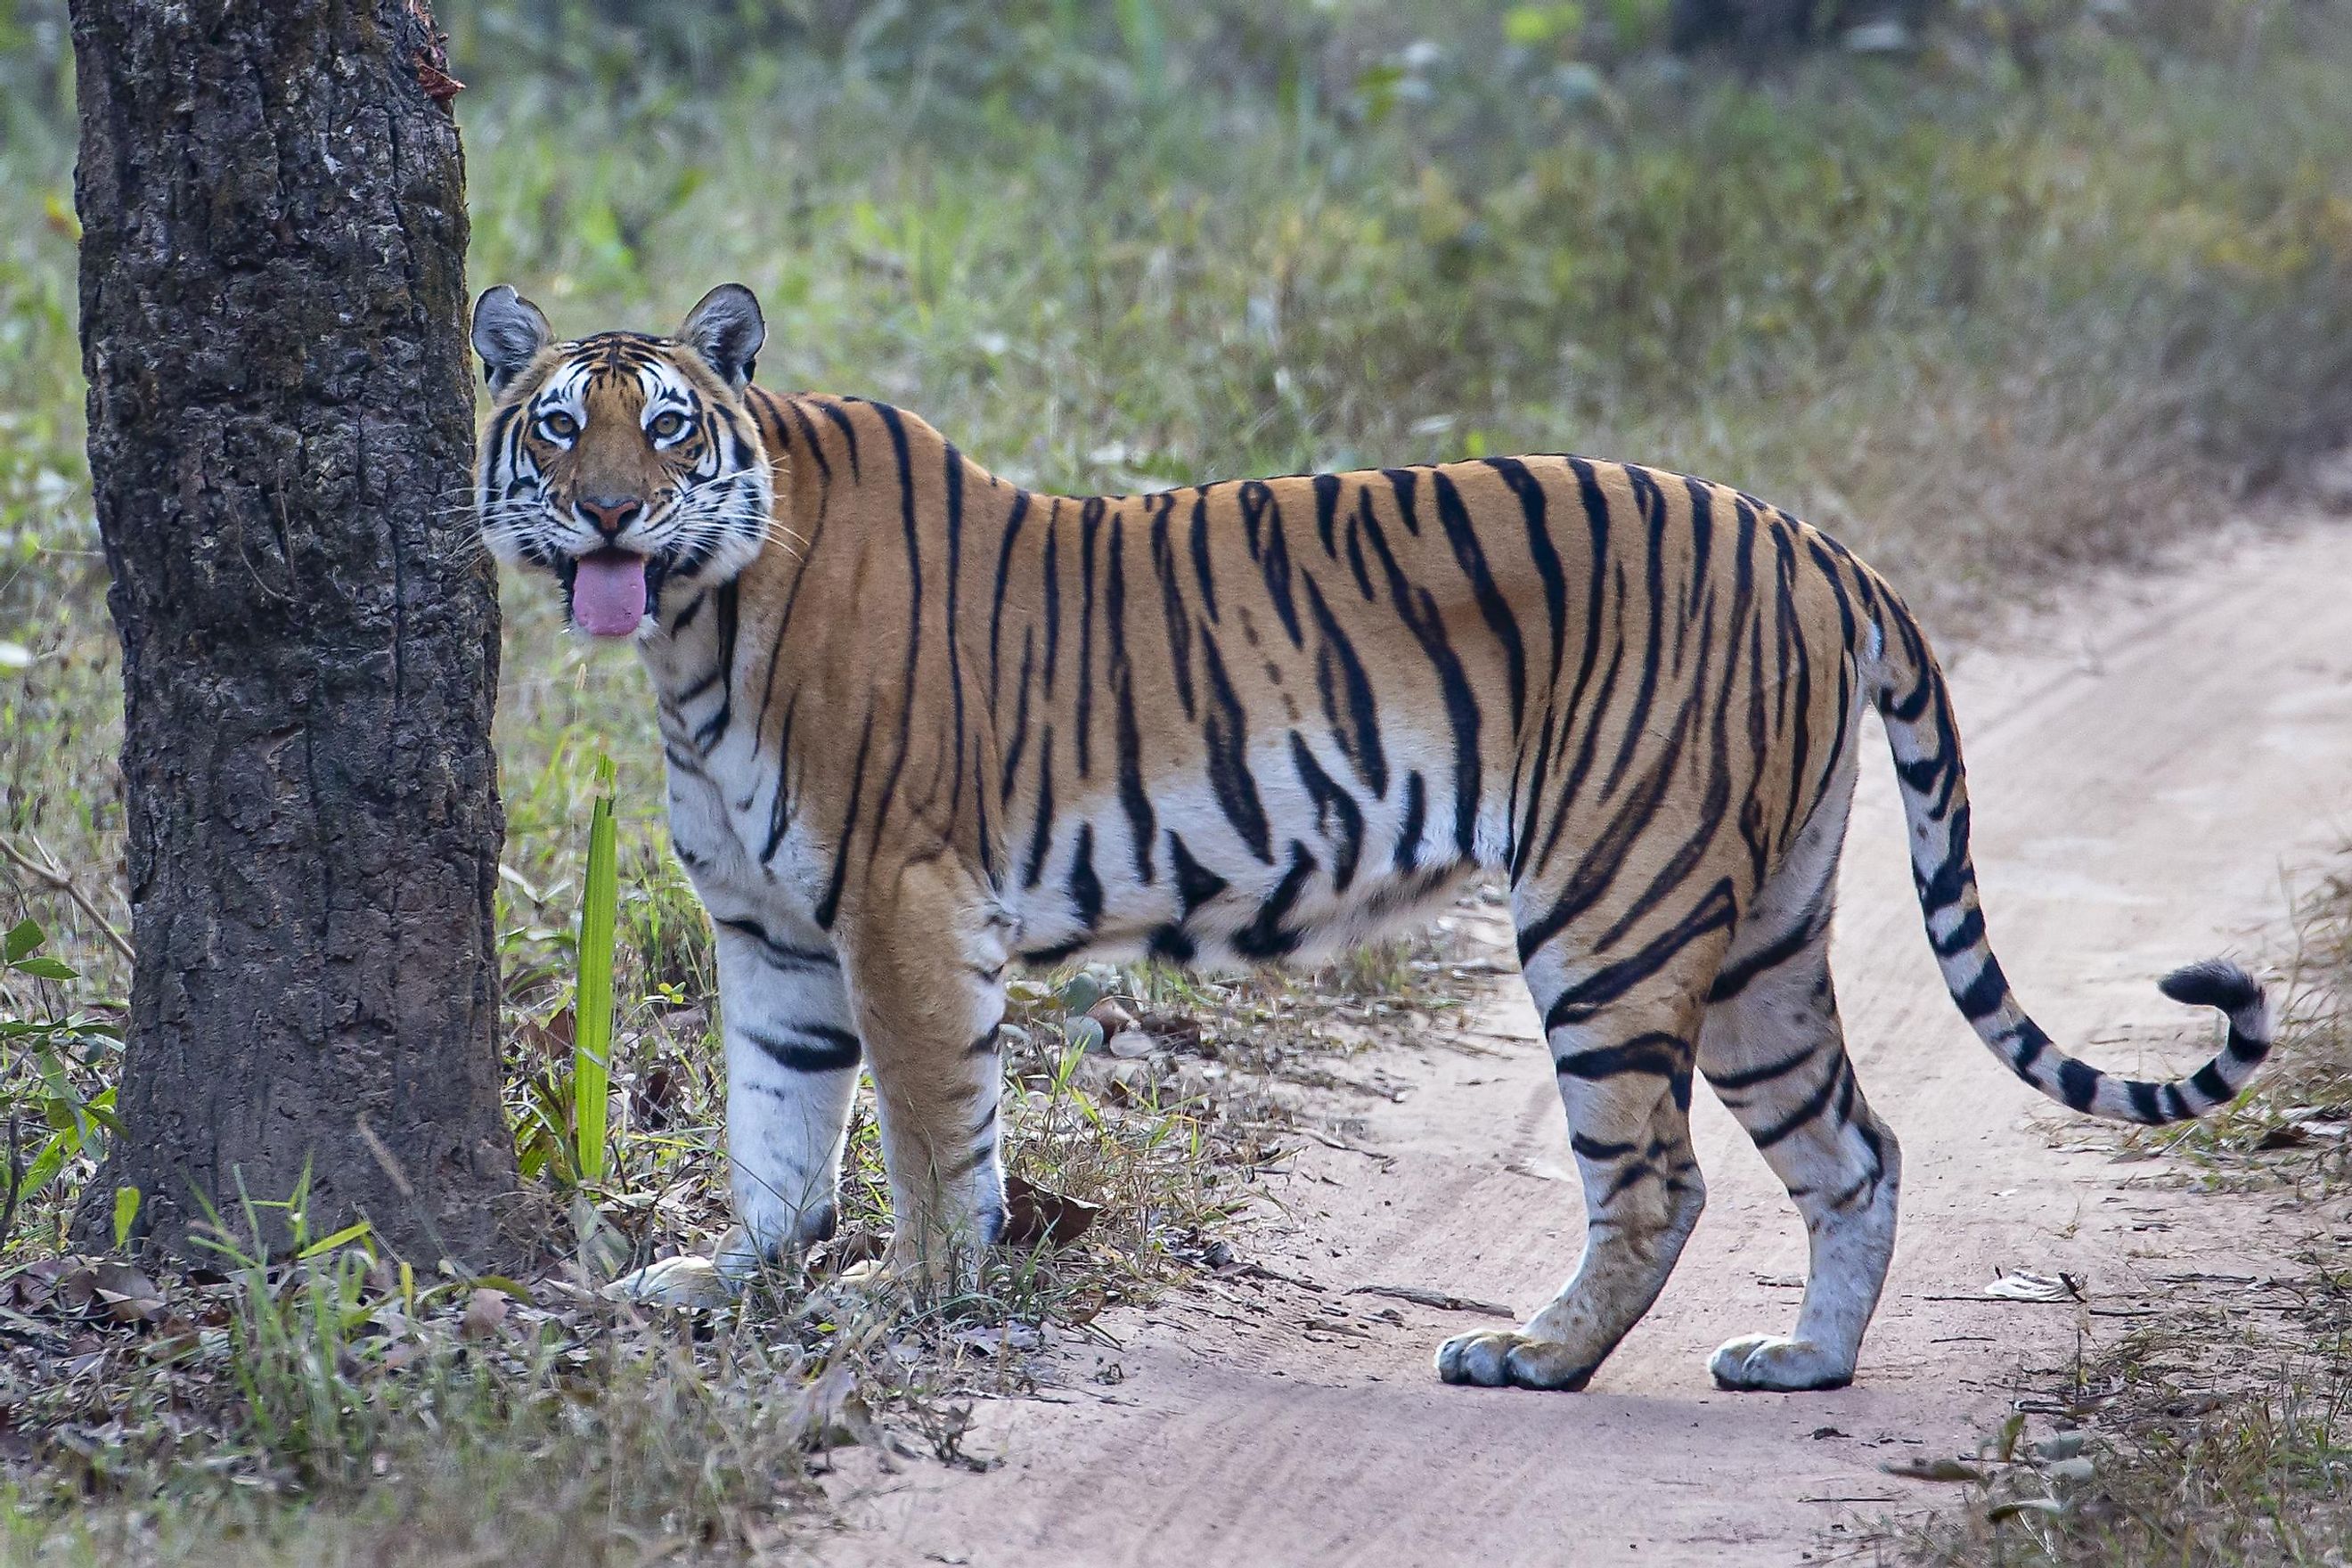 A tiger in Kanha National Park. Image credit: Sanchi Aggarwal